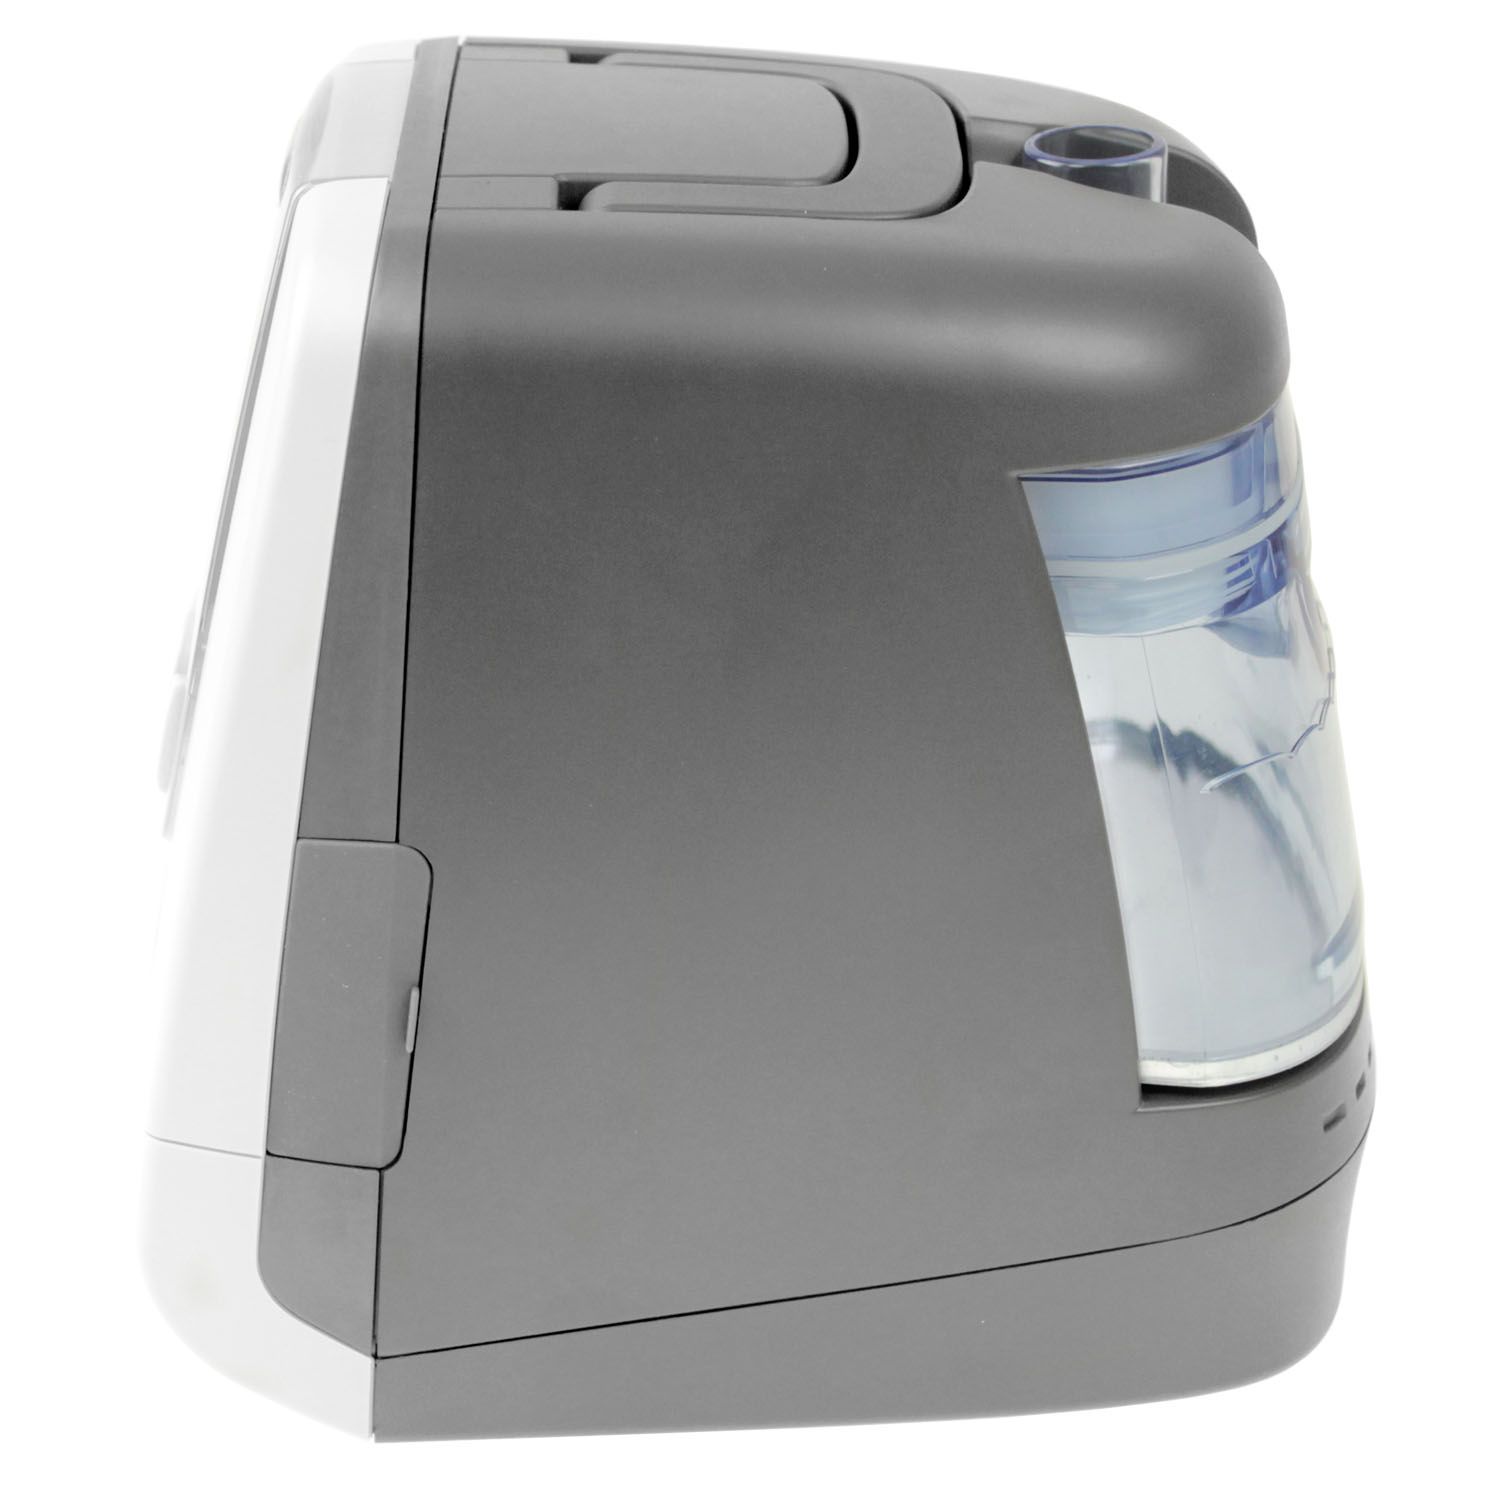 pulox - RVC830A A/CPAP Gerät mit Gesichtsmaske - Schlafapnoe Therapiegerät